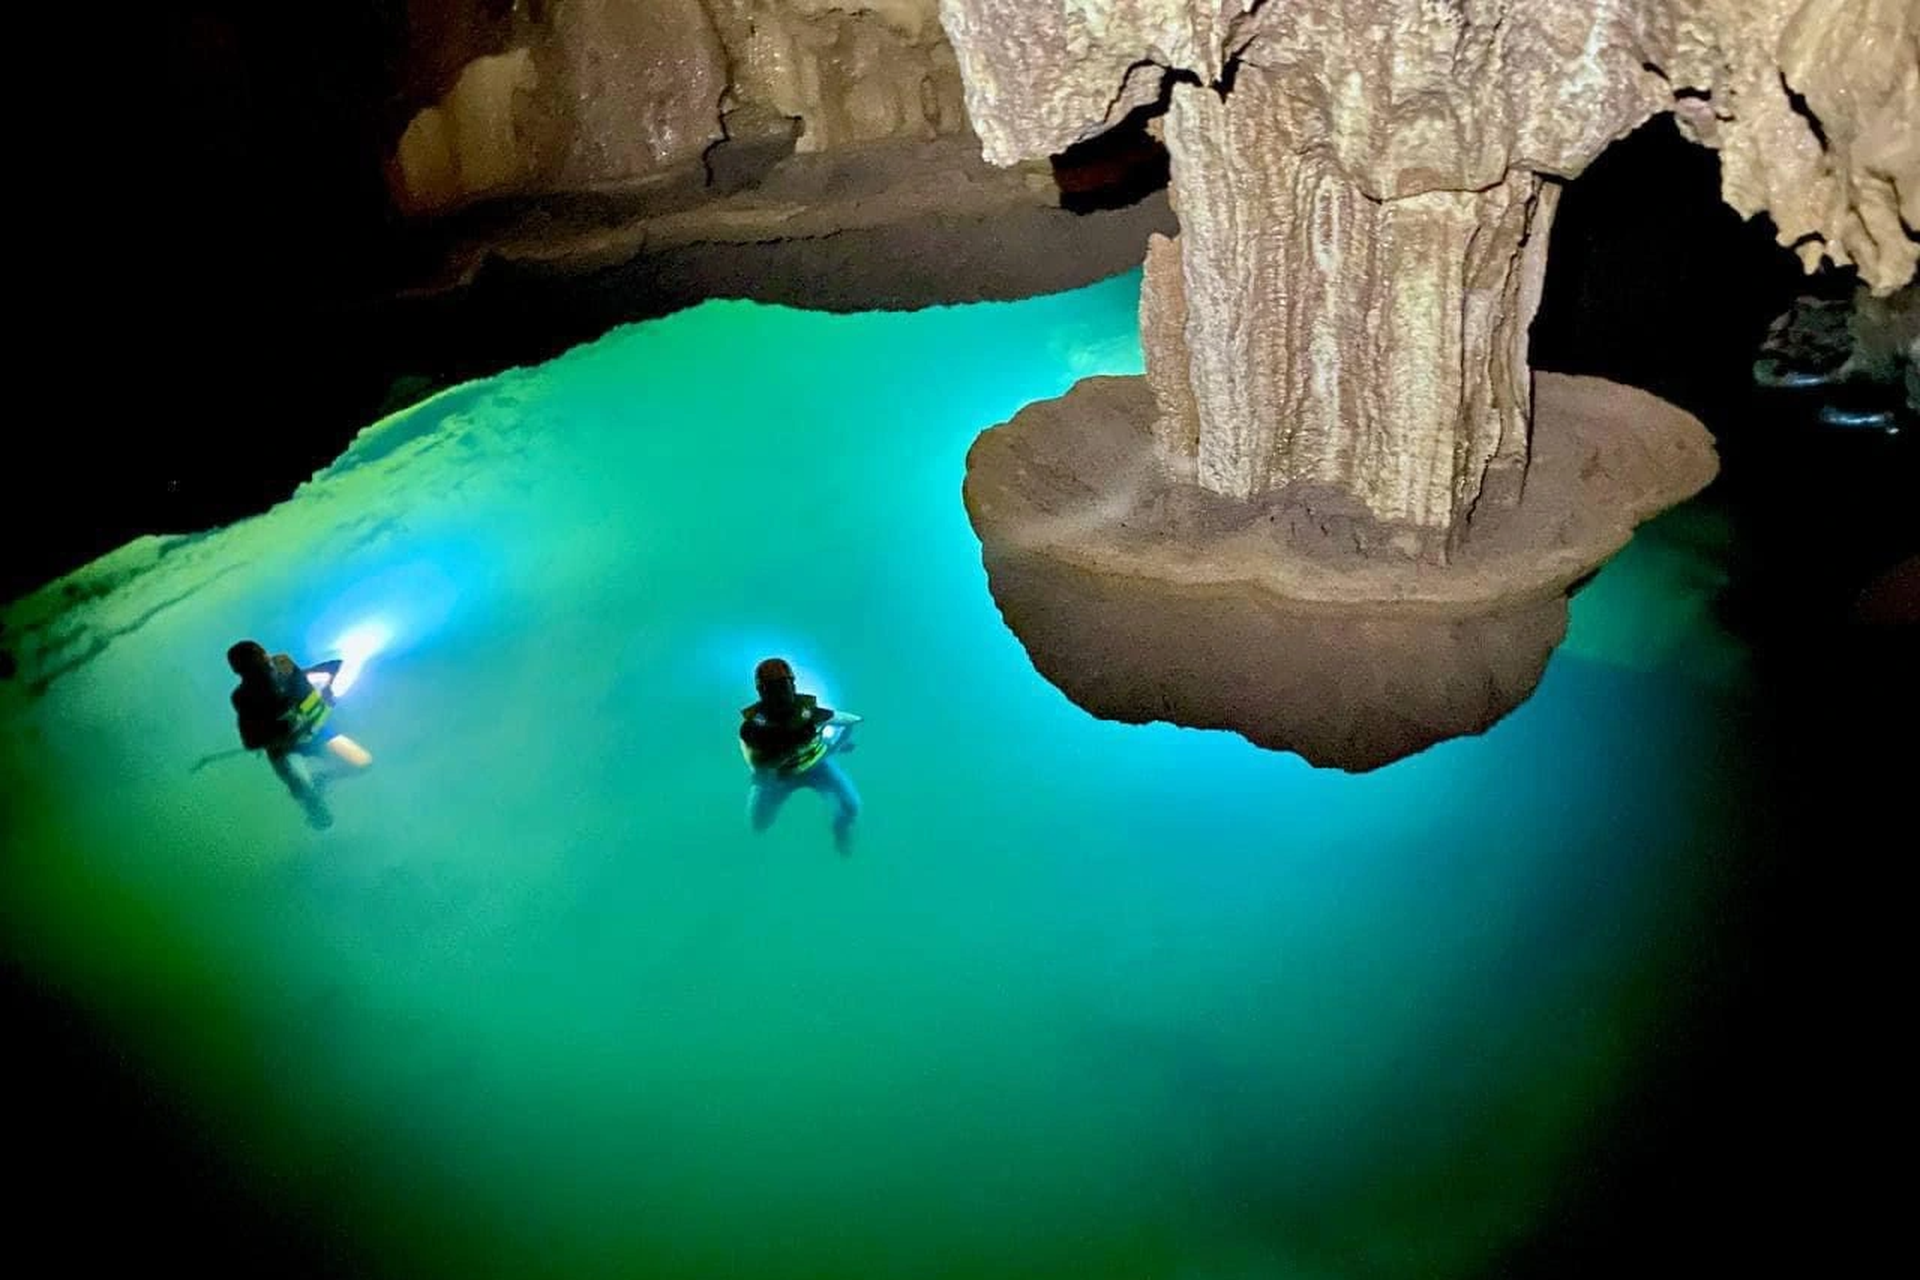 Vẻ đẹp siêu thực trong hang động có hồ nước bí ẩn treo lơ lửng - 4